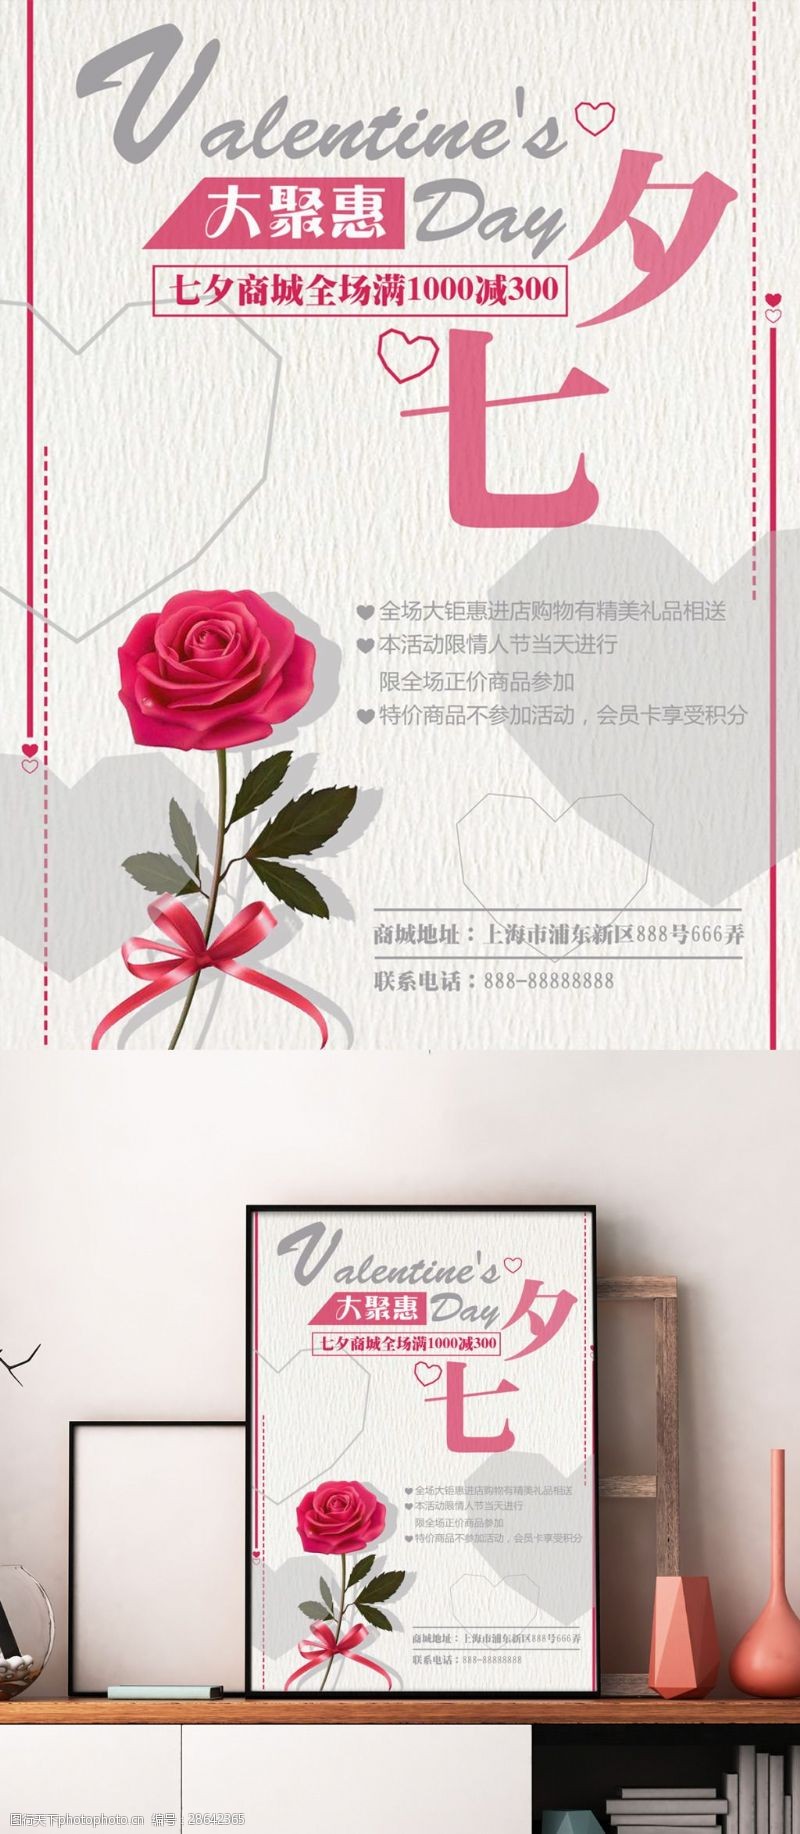 七夕情人节大聚惠商城促销玫瑰花心形海报